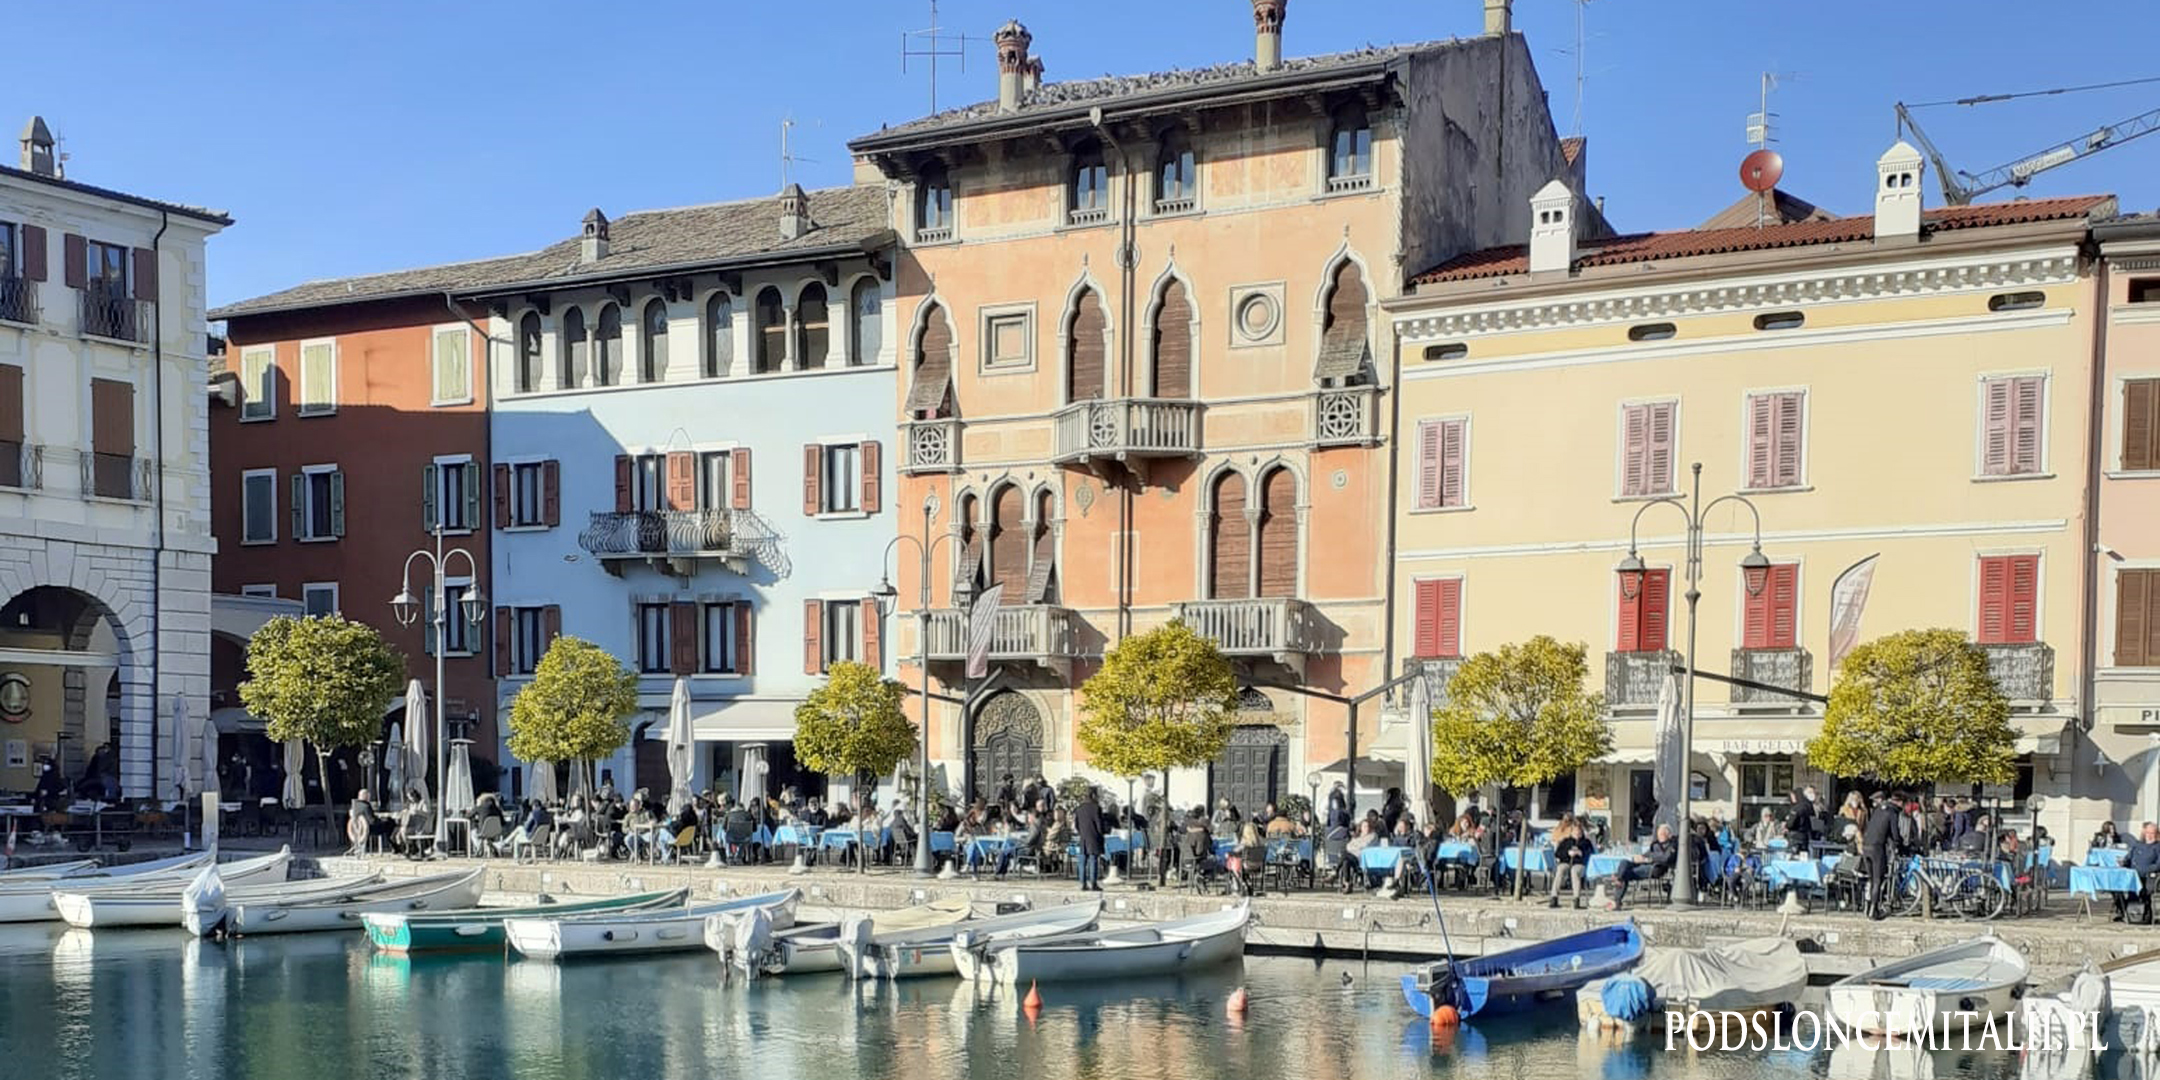 10 ciekawostek na temat Desenzano del Garda, o których najprawdopodobniej nie słyszałeś